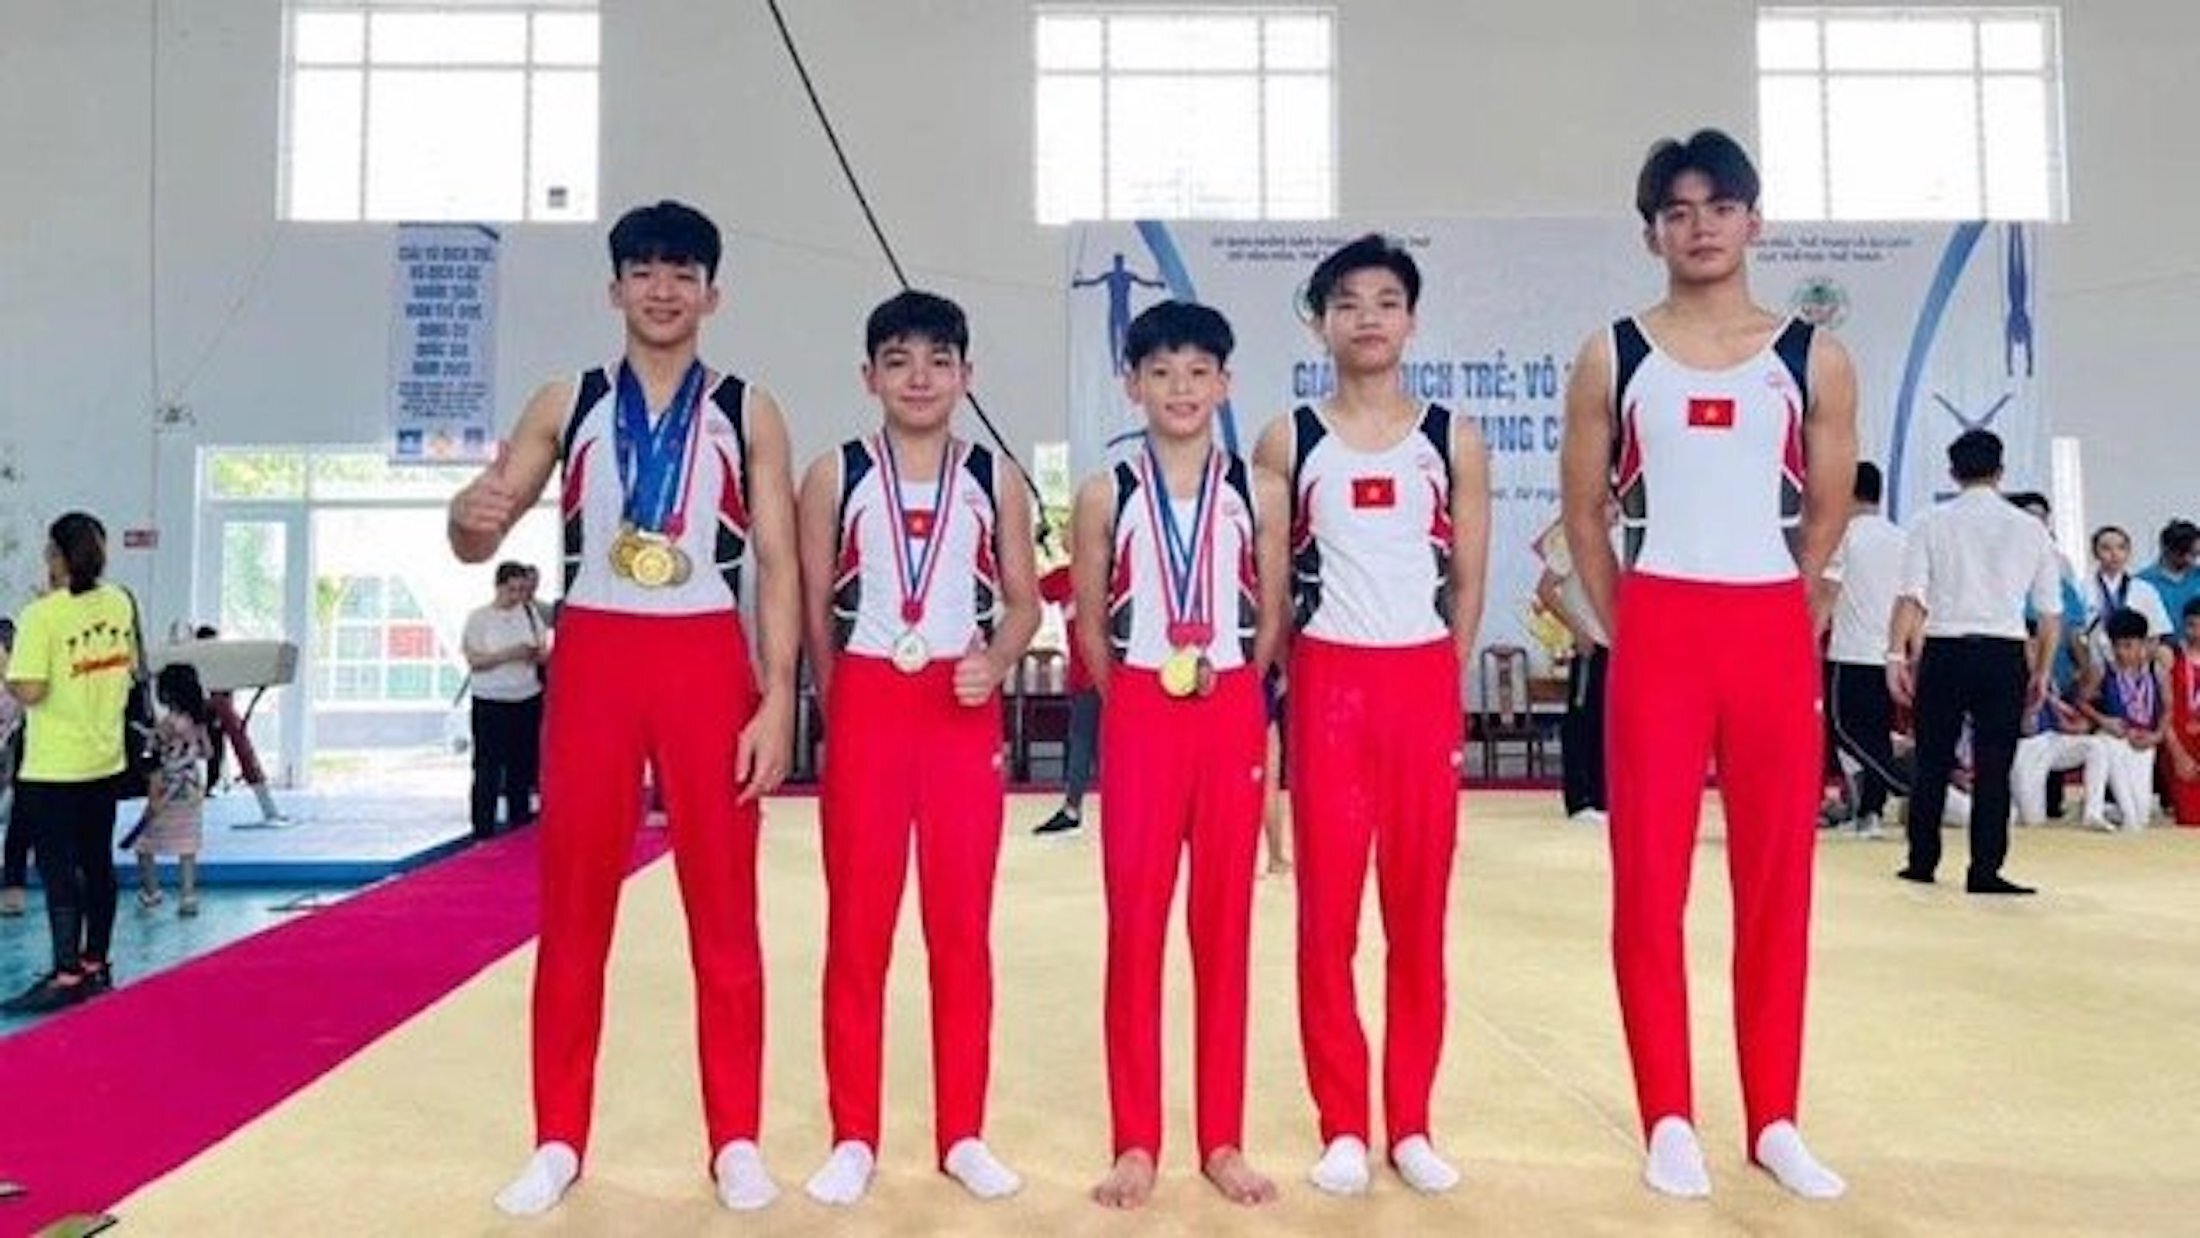 VĐV Nguyễn Minh Triết (ngoài cùng bên phải) là thành viên của đội tuyển trẻ thể dục dụng cụ Quốc gia.